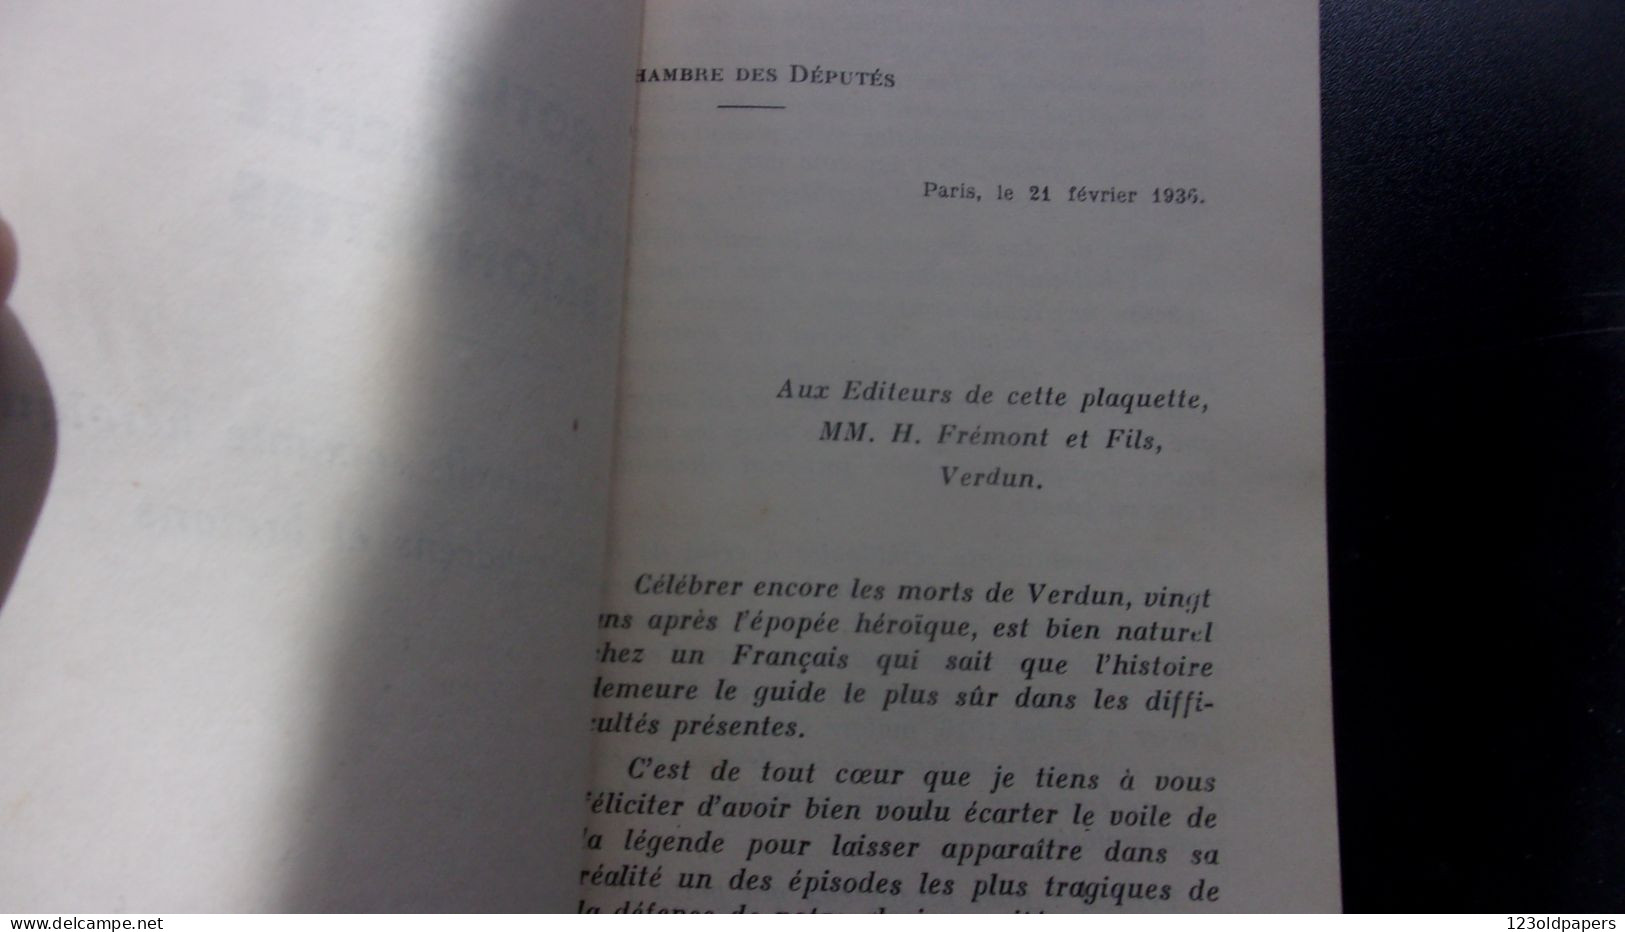 ️  ️  WWI La Tranchée Des Baïonnettes Son Histoire Lettre-préface De M. Le Chanoine Polimann 1939 - Other & Unclassified